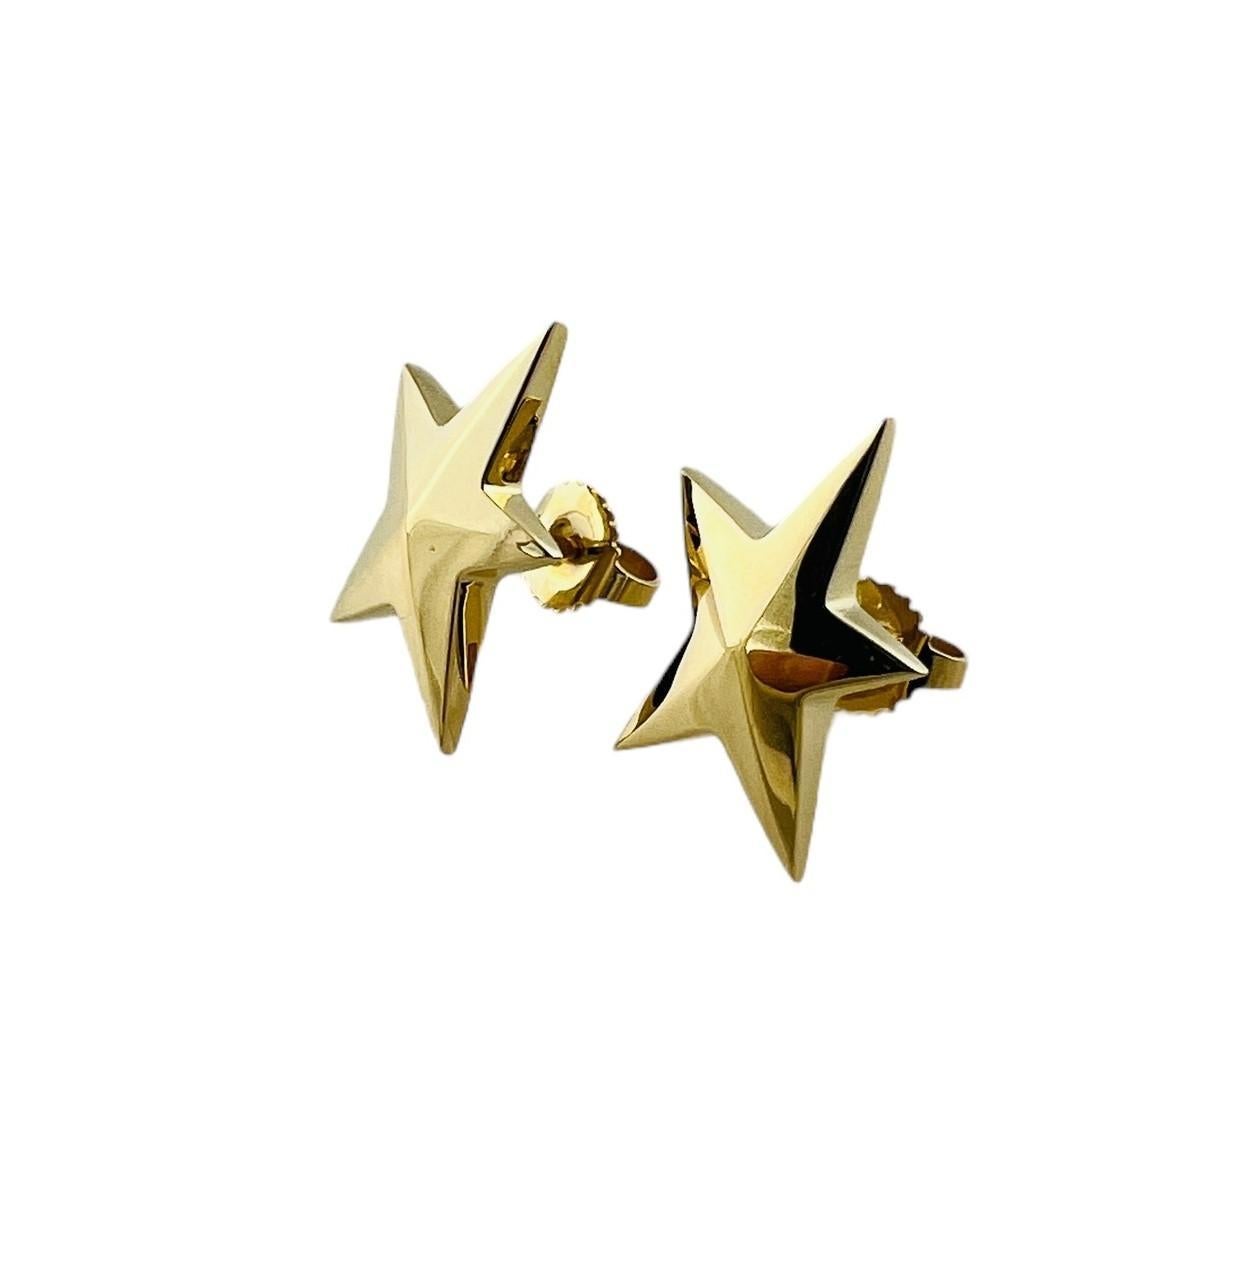 Vintage Tiffany & Co. 18K Gelbgold Stern-Ohrringe 

circa 1980er Jahre

Diese abstrakten goldenen Stern-Ohrringe von Tiffany & Co. sind aus 18 Karat Gelbgold gefertigt.

Die Ohrringe haben einen Durchmesser von ca. 17 mm und eine Länge von 14 mm von